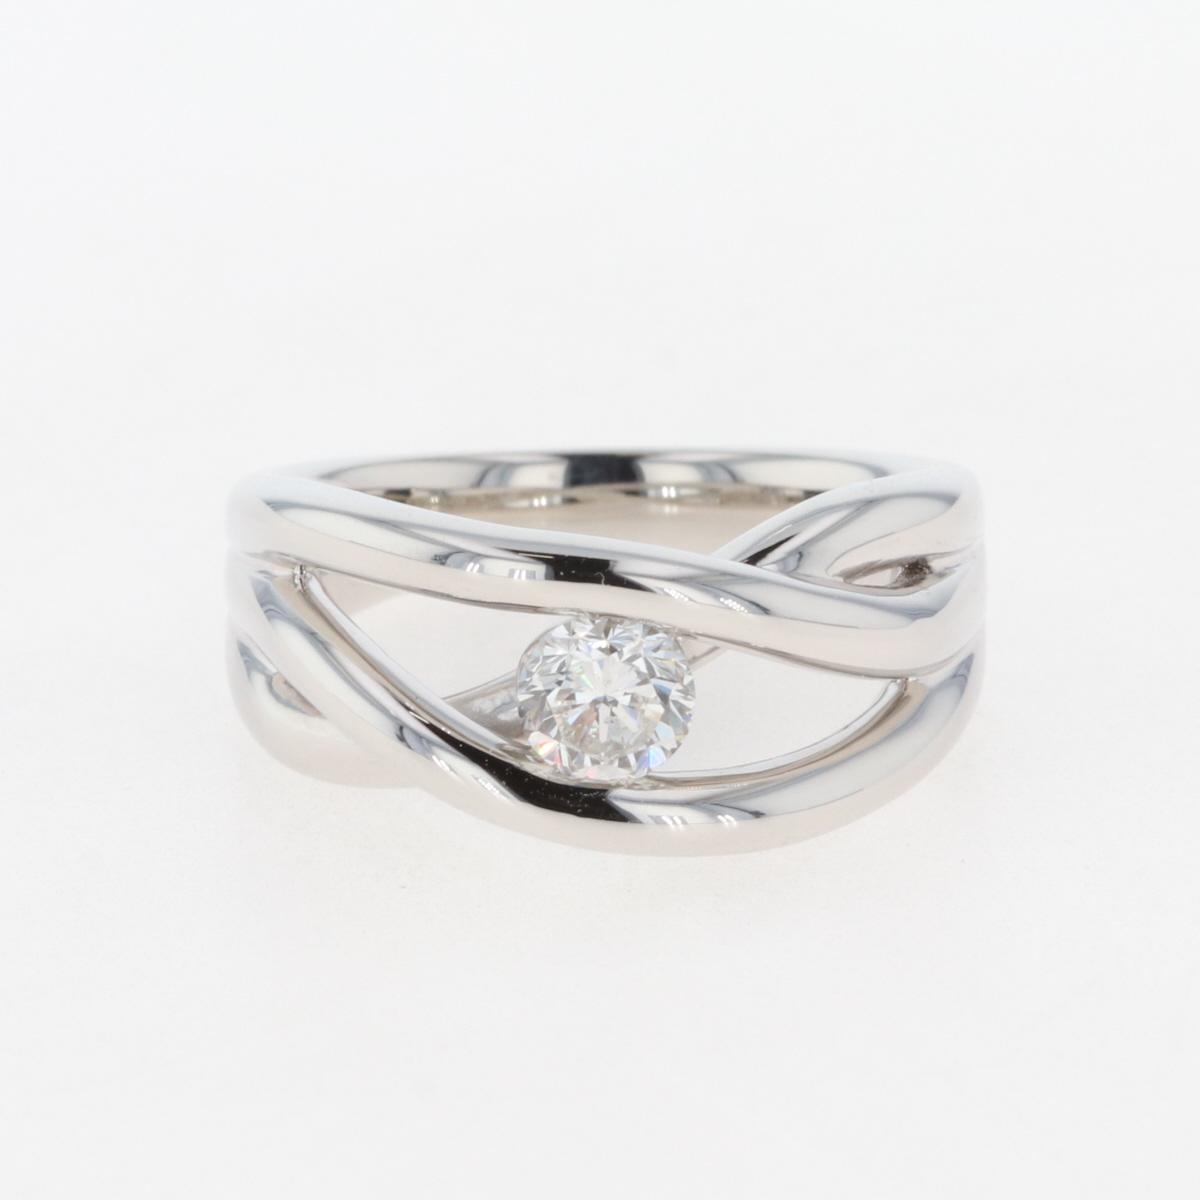 週末限定タイムセール》 ダイヤモンド デザインリング プラチナ 指輪